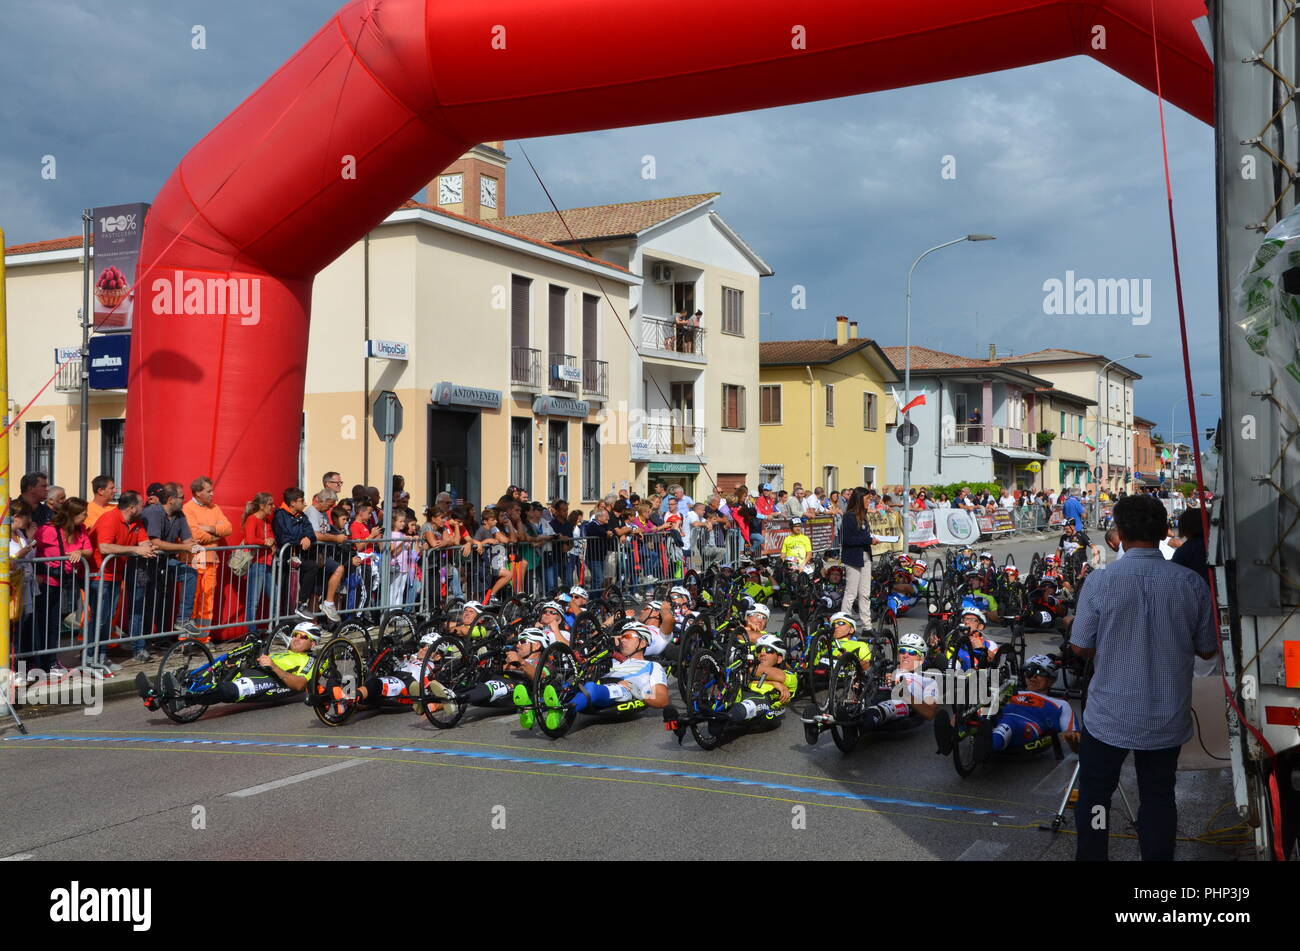 Villafranca Padovana, Italy. 2 September 2018. National handbike race inaugurated by Alex Zanardi at Villafranca Padovana, Padua, September 2, 2018 Credit: Alessandro Lollo/Alamy Live News Stock Photo